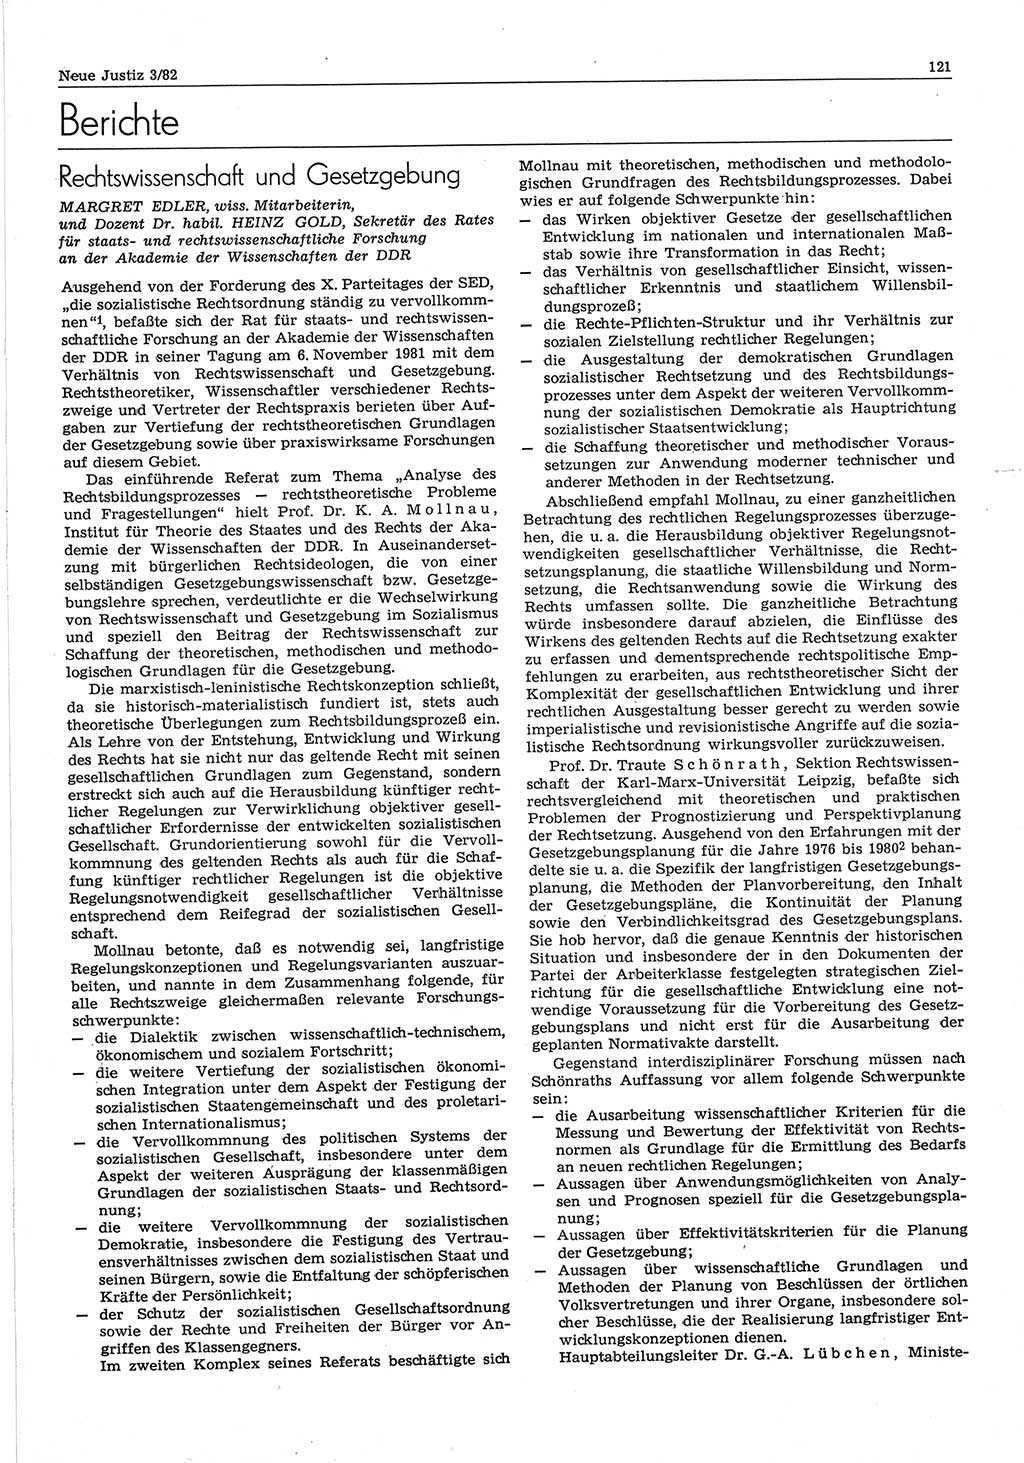 Neue Justiz (NJ), Zeitschrift für sozialistisches Recht und Gesetzlichkeit [Deutsche Demokratische Republik (DDR)], 36. Jahrgang 1982, Seite 121 (NJ DDR 1982, S. 121)